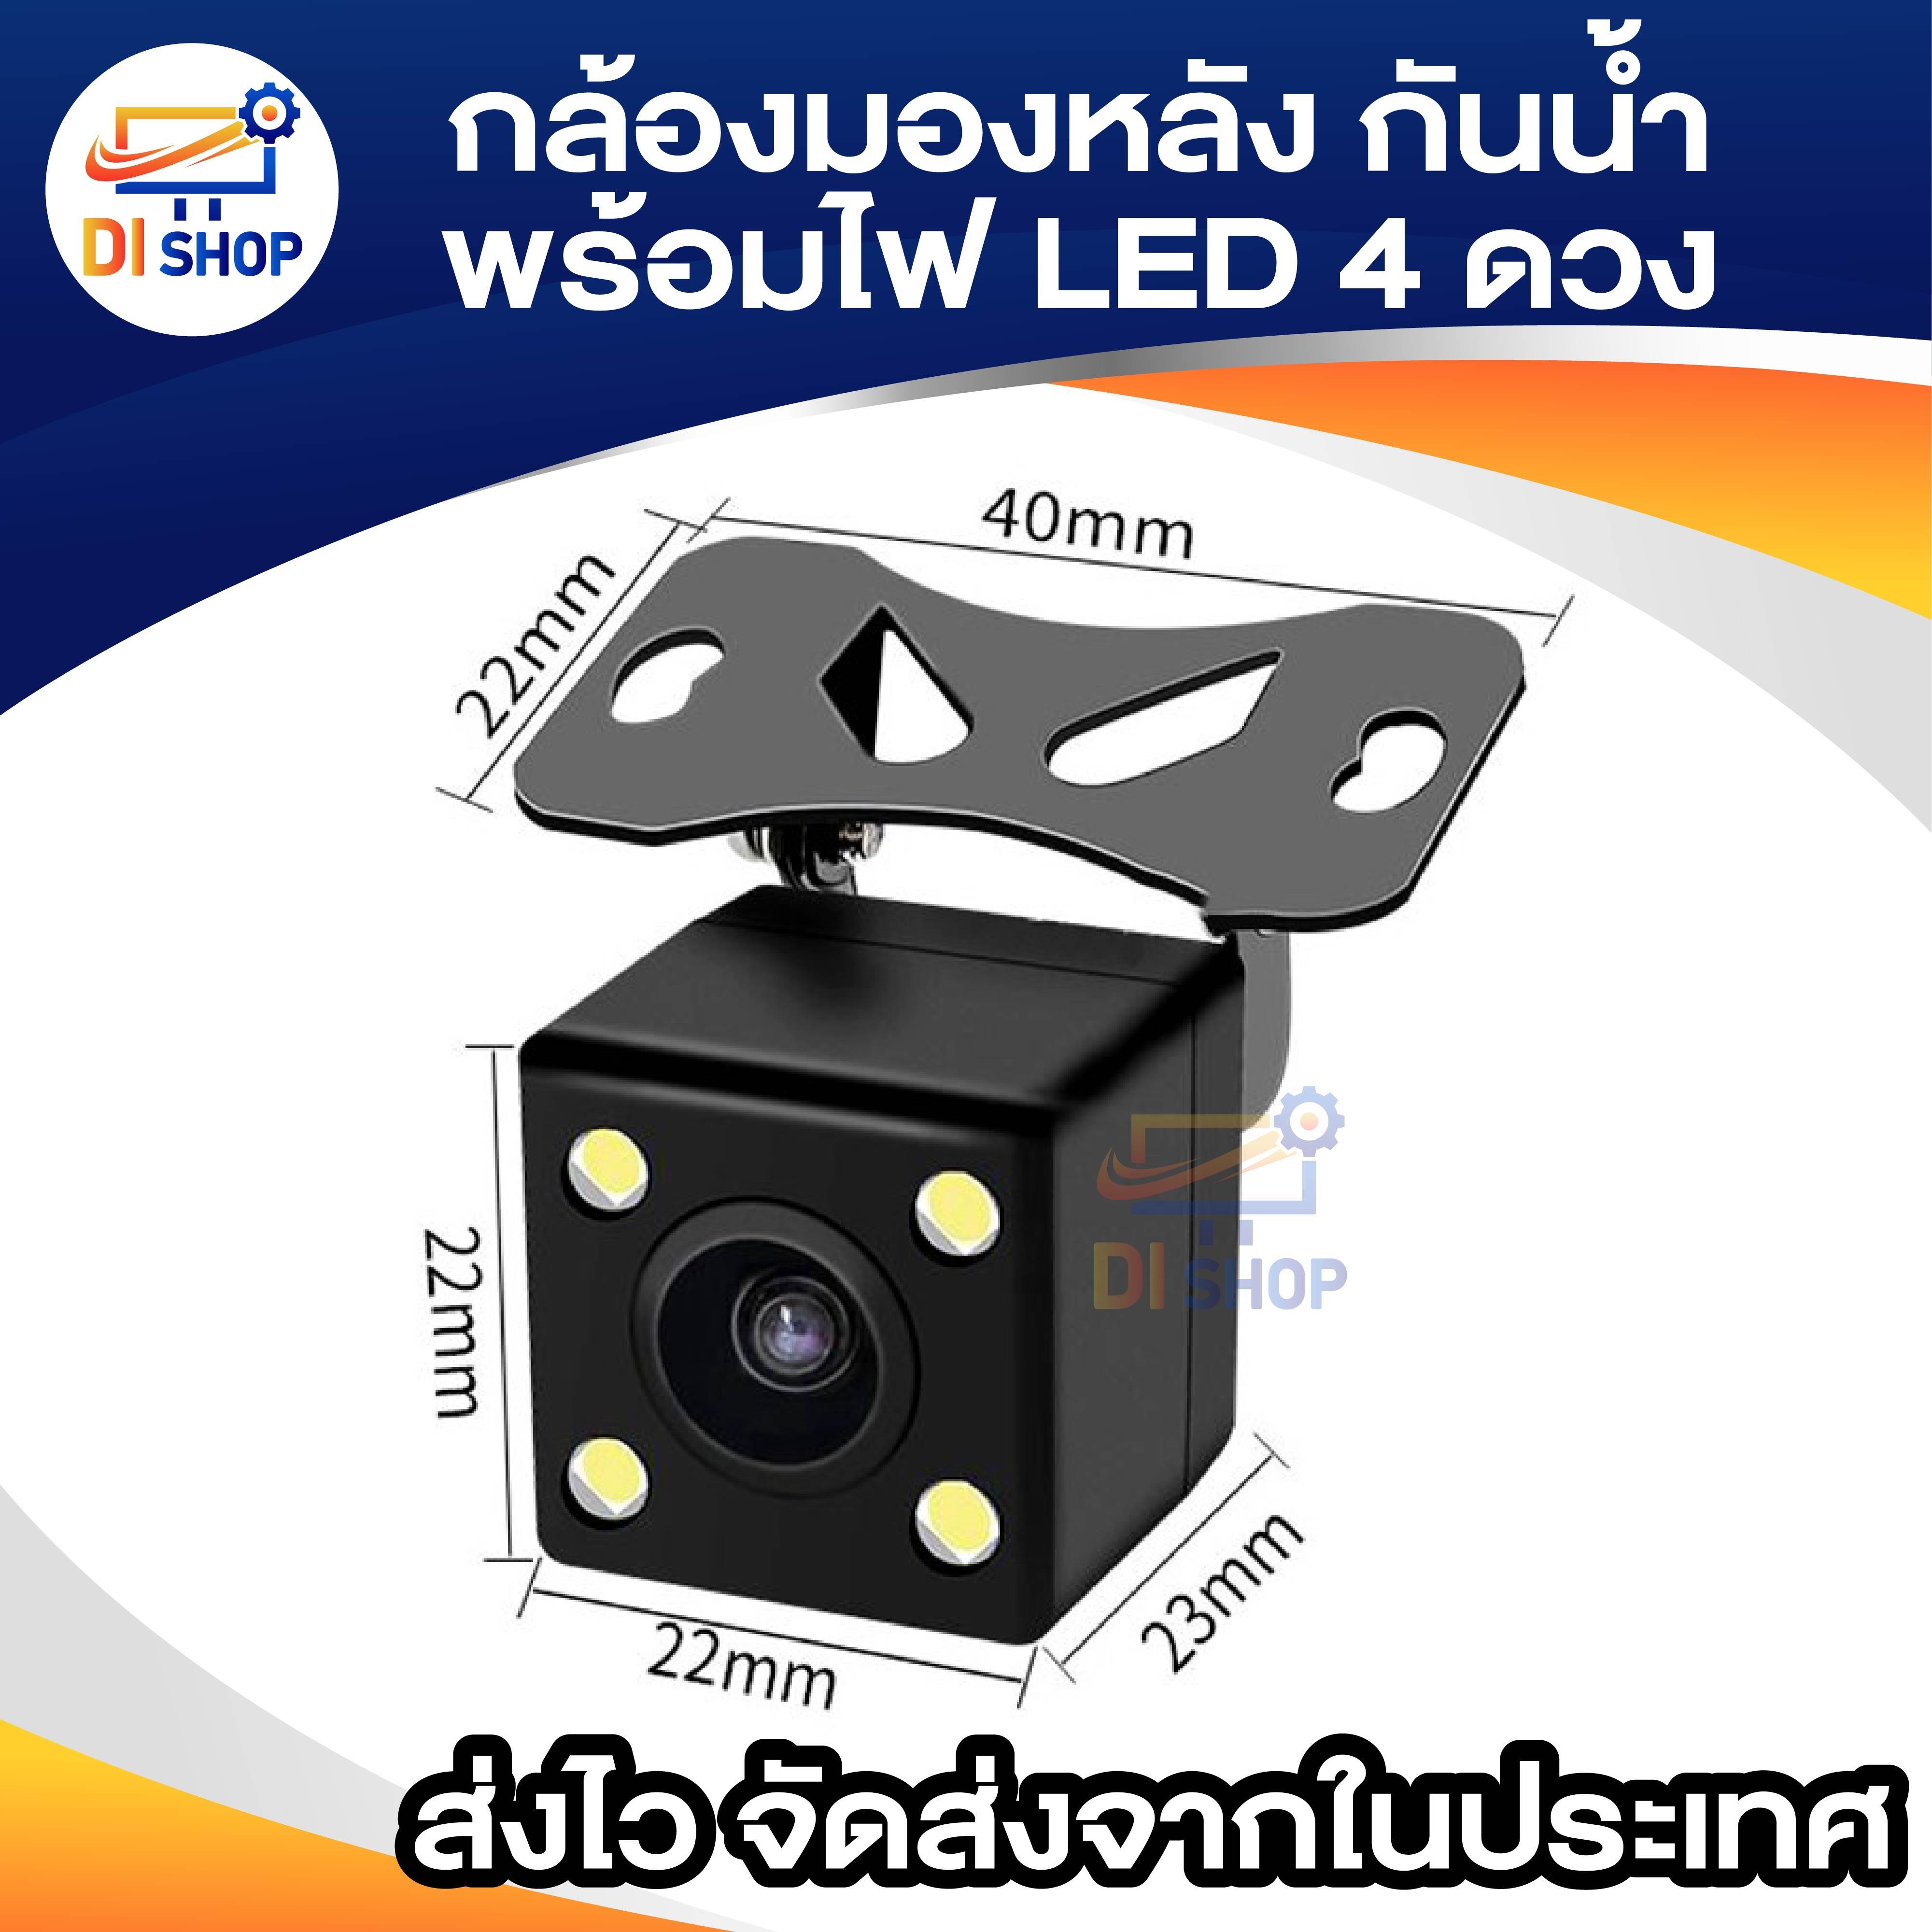 รายละเอียดเพิ่มเติมเกี่ยวกับ กล้องมองหลัง : Rear Camera 4 Pin กล้องหลังบันทึก กล้องถอย ยาว 5 เมตร 4 พิน พร้อมไฟ LED 4 ดวง กันน้ำ 100%